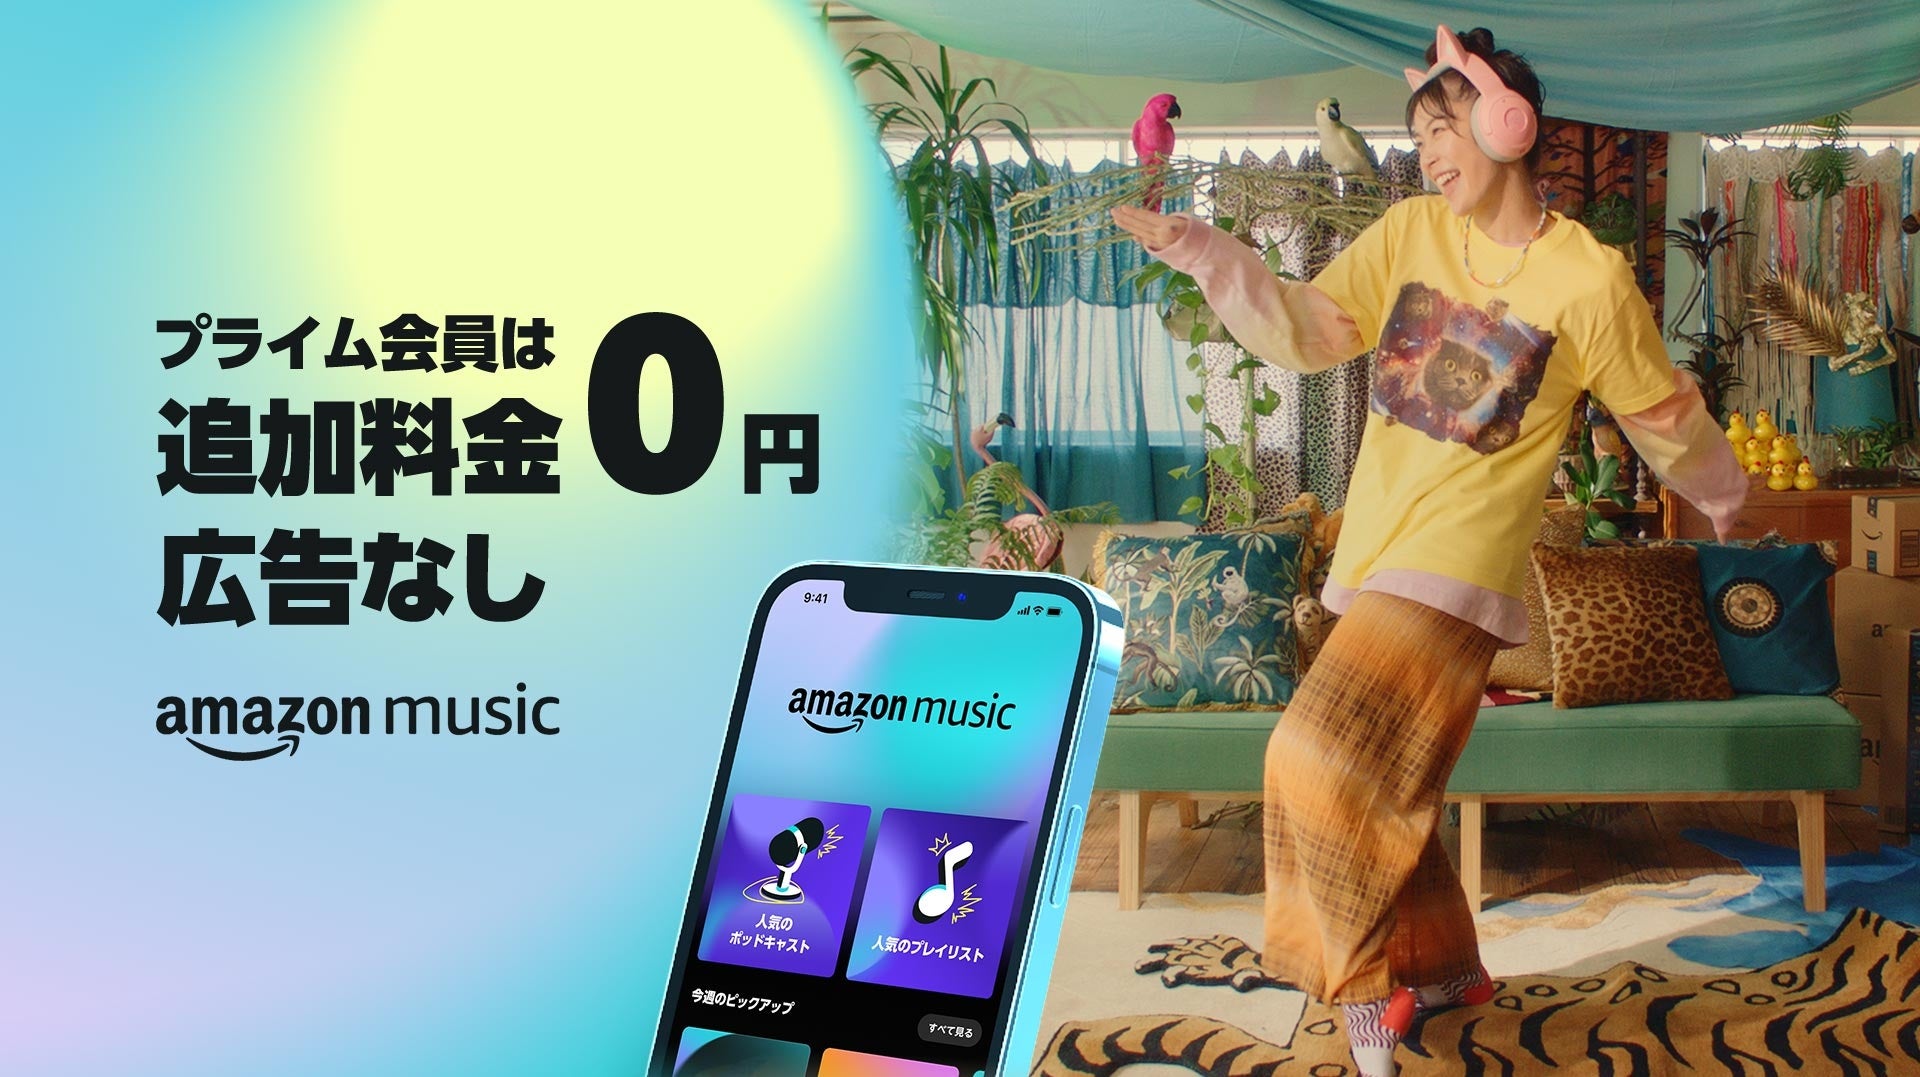 Amazon Music、Amazon Music Primeを使いこなすヒントを紹介するブランドキャンペーン「音楽たりてる？ プライム会員はおトクに音楽を楽しもう」を本日より開始